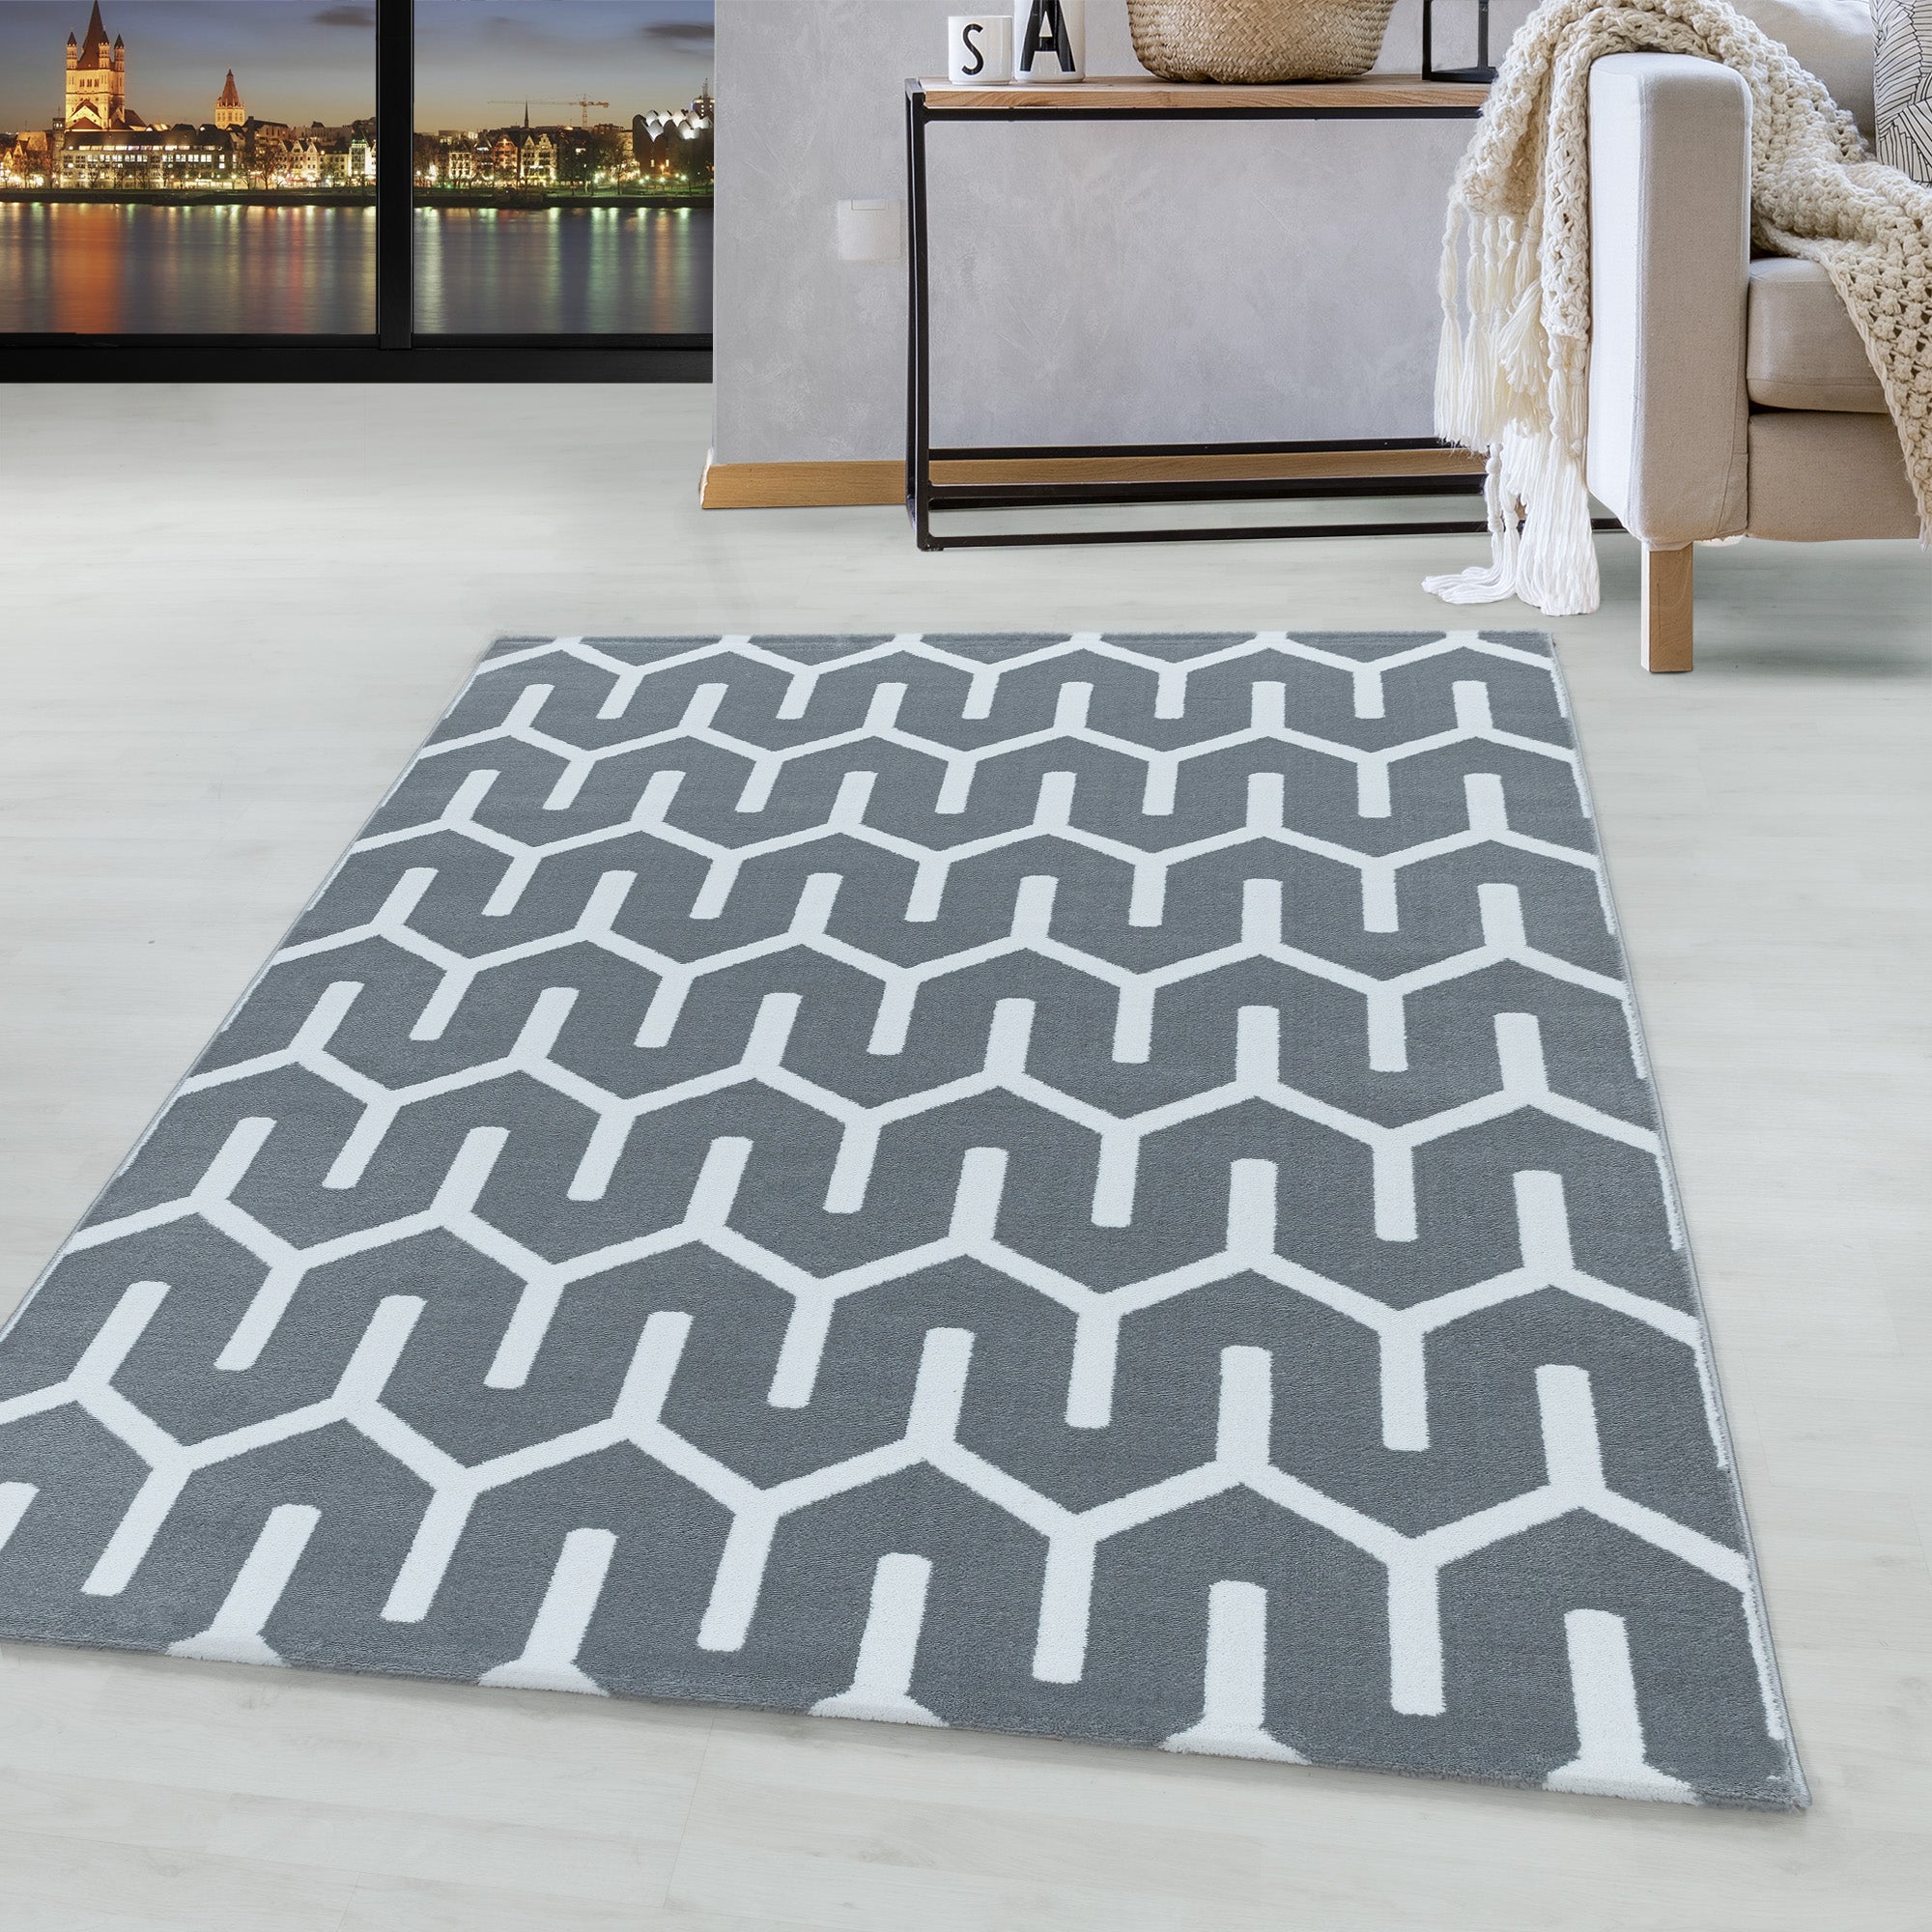 Weicher Kurzflor Teppich Wohnzimmerteppich Gitter Design Soft Flor Grau